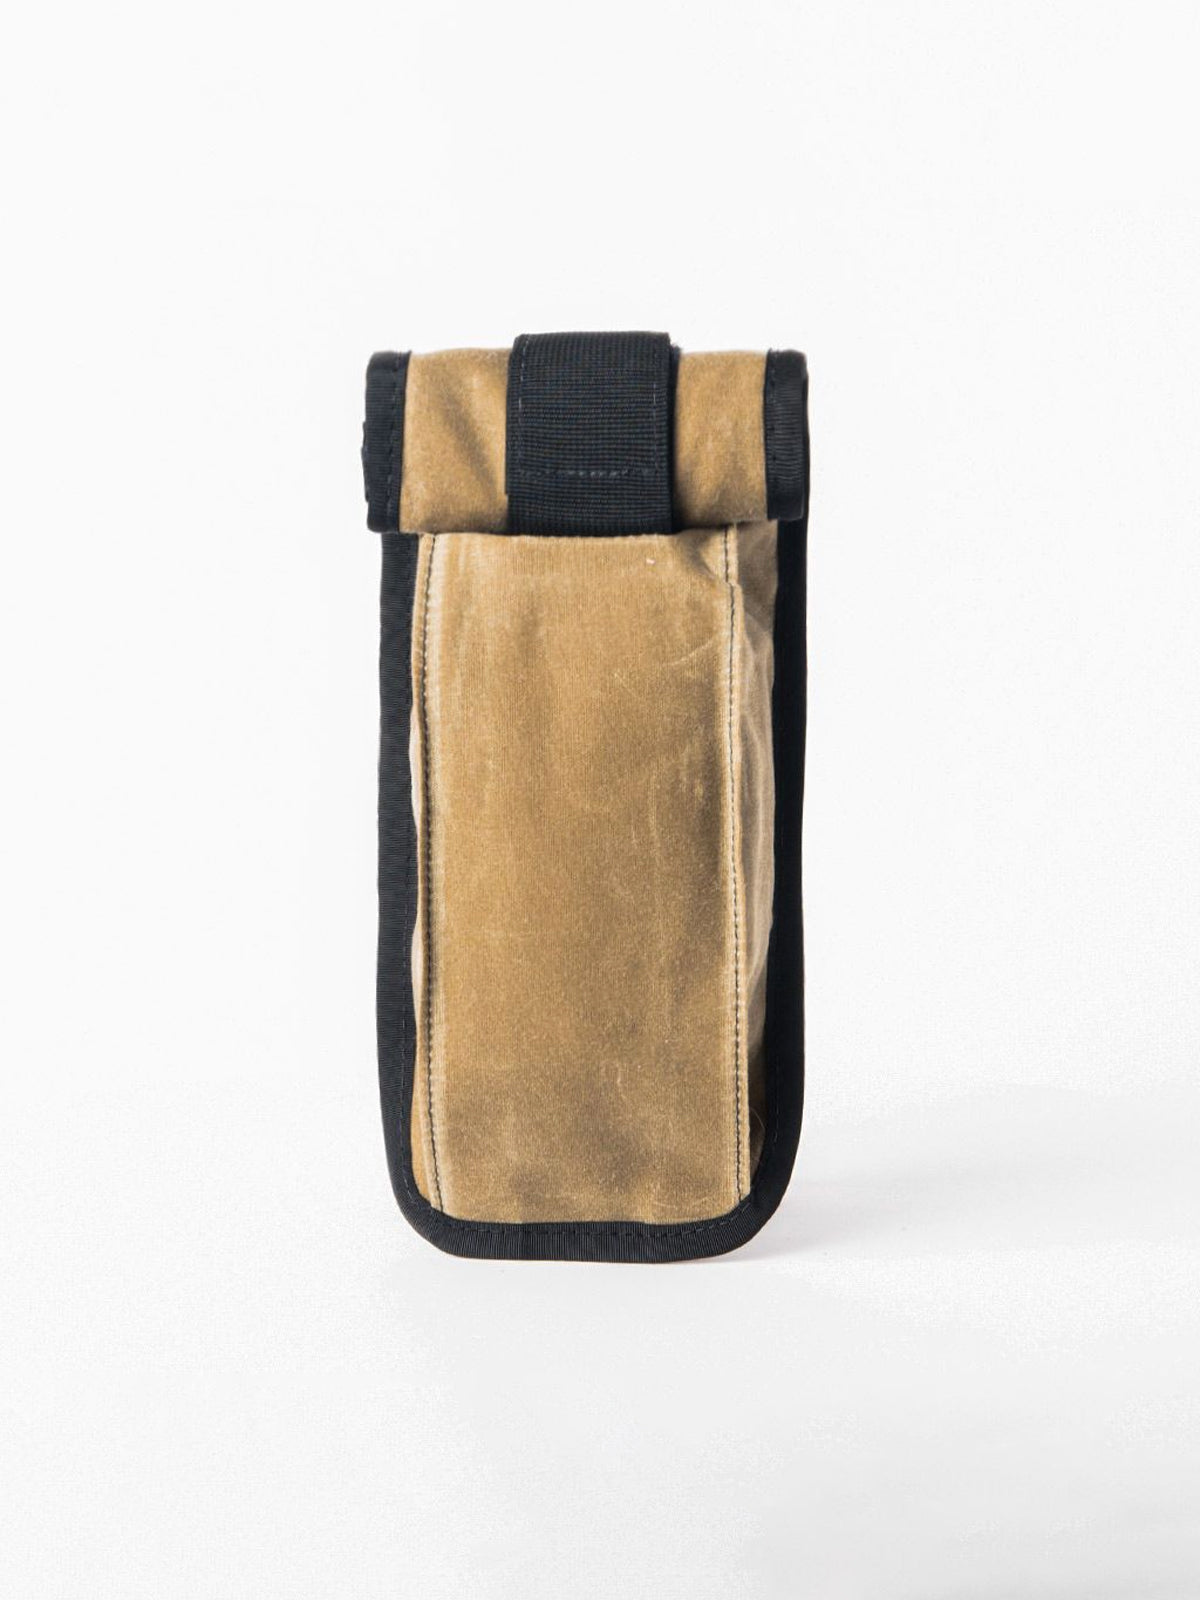 Arkiv Vertical Rolltop Pocket von Mission Workshop - Wetterfeste Taschen & Technische Bekleidung - San Francisco & Los Angeles - Für die Ewigkeit gebaut - Garantiert